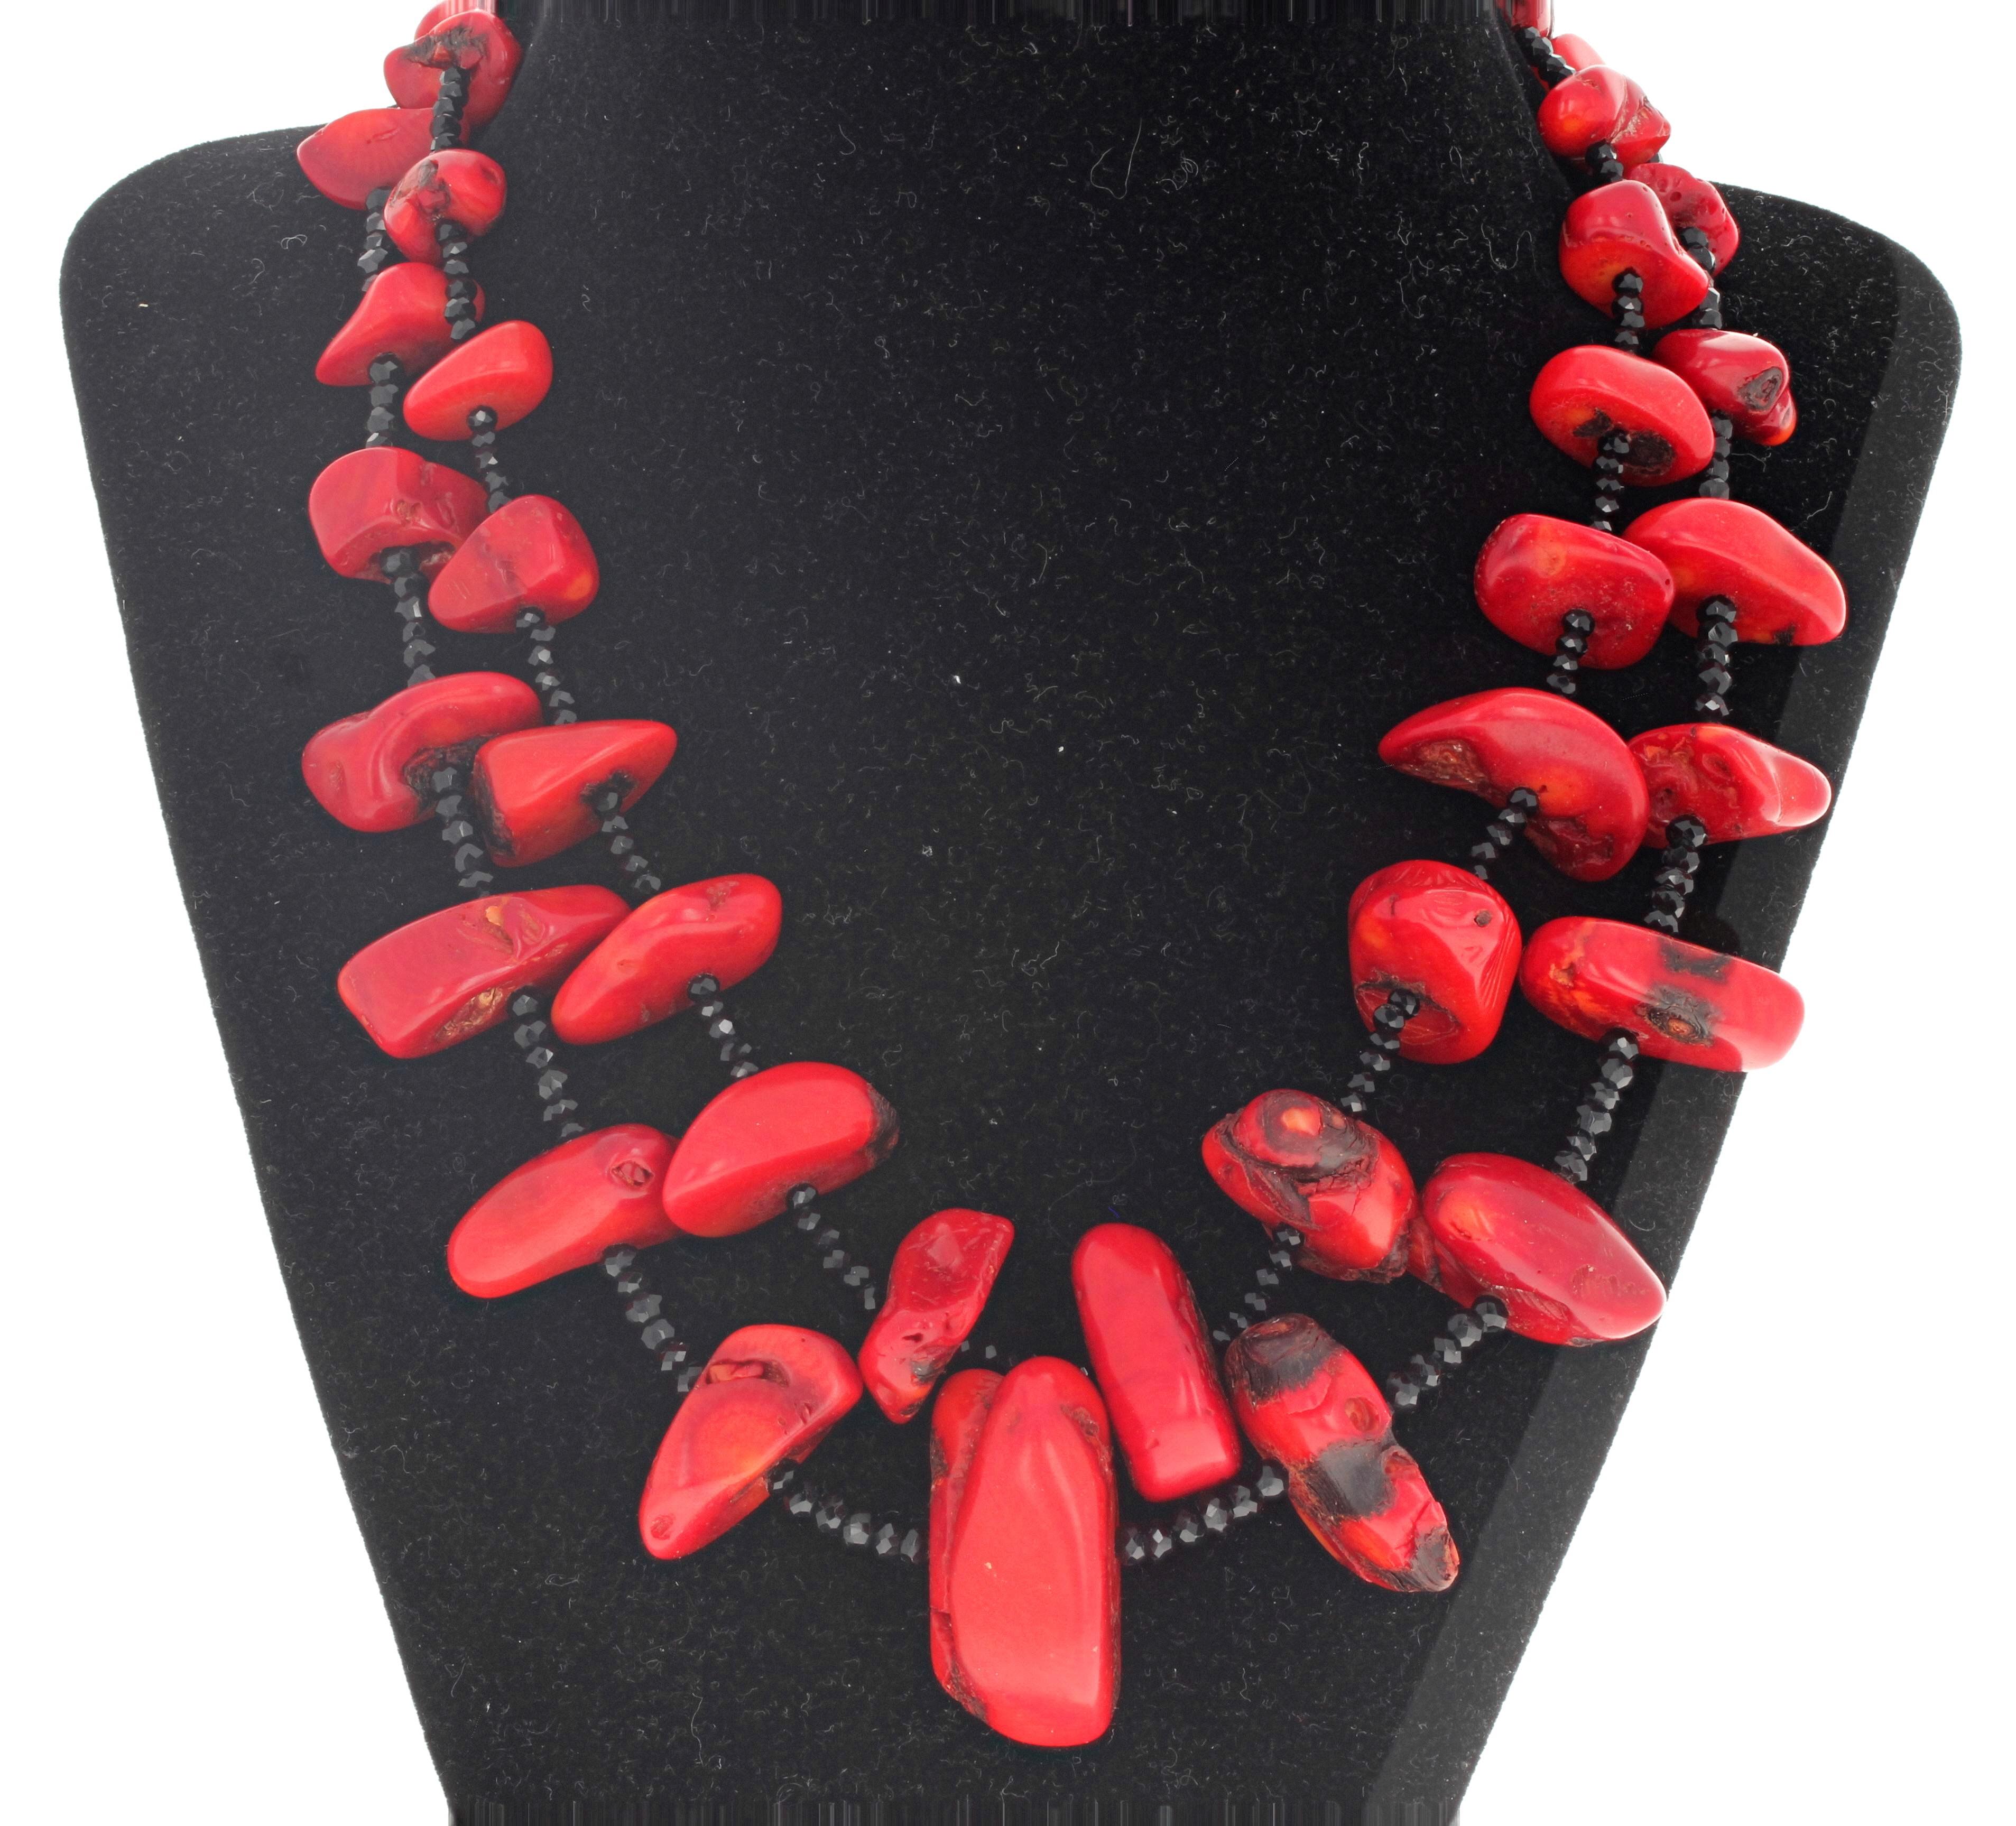 Le plus grand corail rouge naturel de ce collier à deux brins mesure 34 mm x 16 mm.  Les Onyx noirs naturels scintillants sont taillés dans la pierre et mesurent 4 mm.  Ce magnifique collier fascinant et dramatique mesure 18 pouces de long et est